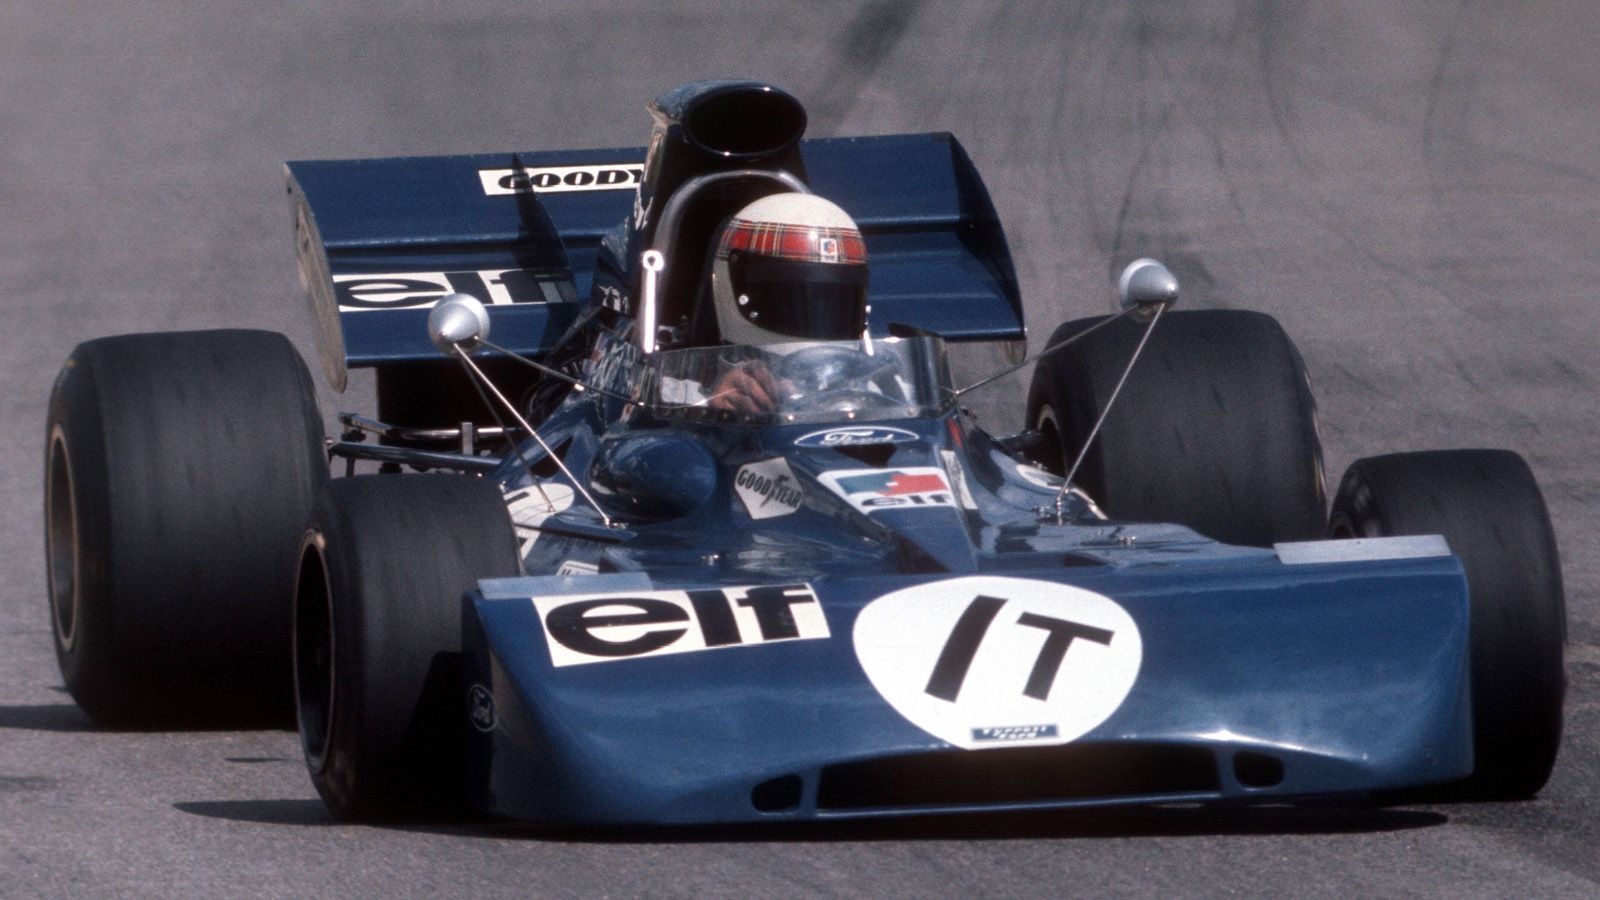 
                <strong>Tyrrell Ford (1971)  </strong><br>
                In den frühen 1970er Jahren prägte Sir Jackie Stewart die Formel 1 und gewann drei Fahrer-WMs (1969, 1971, 1973) - unter anderem in diesem Gefährt: Der blaue Tyrrell Ford aus dem Jahr 1971 fiel durch die V-förmigen Rückspiegel sowie den brettflachen Spoiler auf. Der Weltverband erließ einheitliche Regeln für die Größe und die Platzierung von Flügeln an den Fahrzeugen. Dabei spielten auch Sicherheitsaspekte eine entscheidende Rolle.    
              